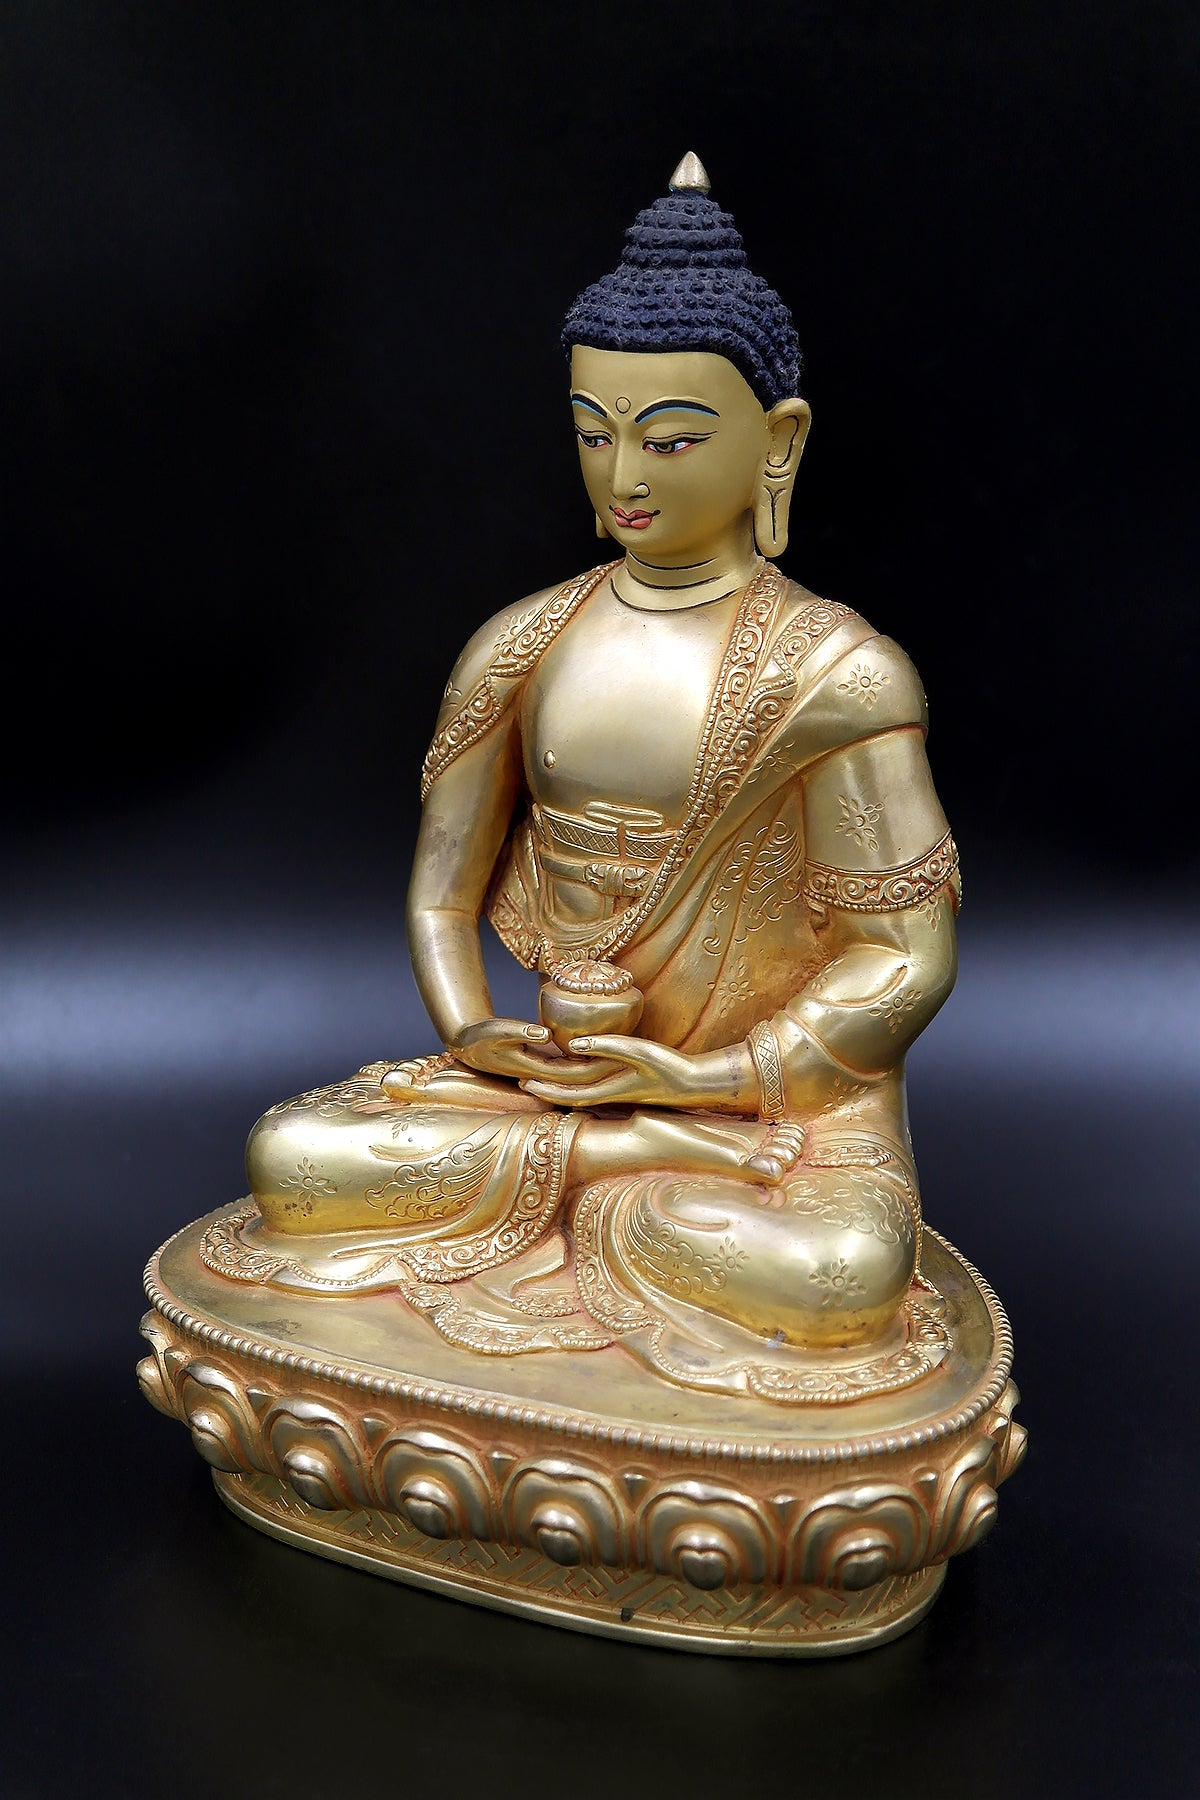 Tibetan Amitabh Buddha Statue from Nepal, Golden Buddha Statue 9"